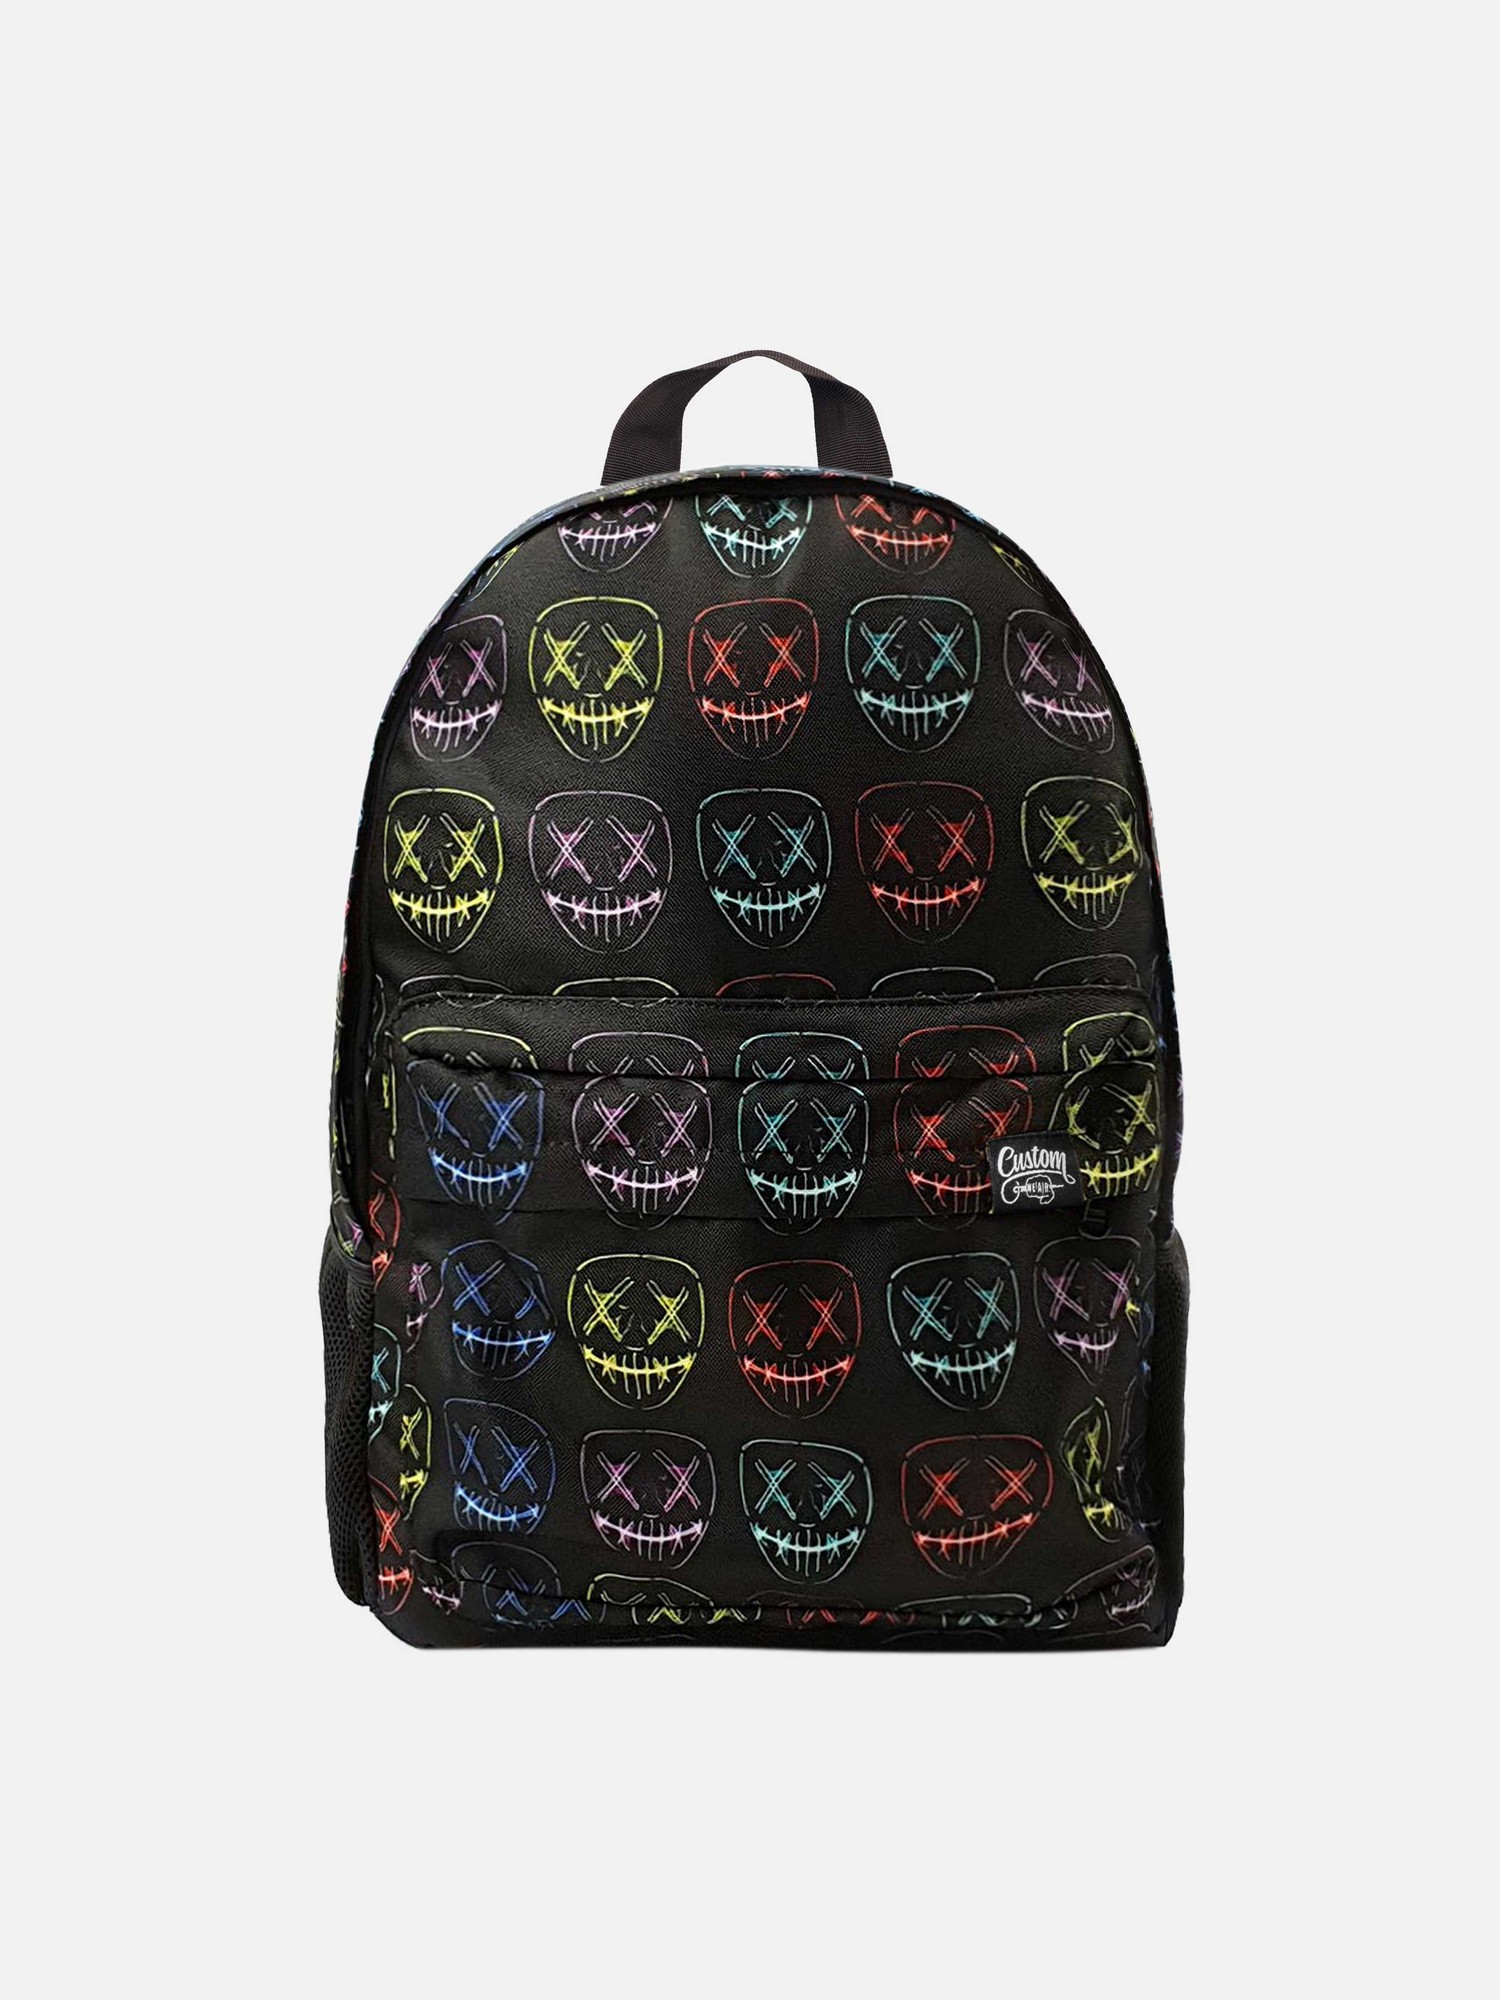 Backpack Duo 2.0 LED Custom Wear